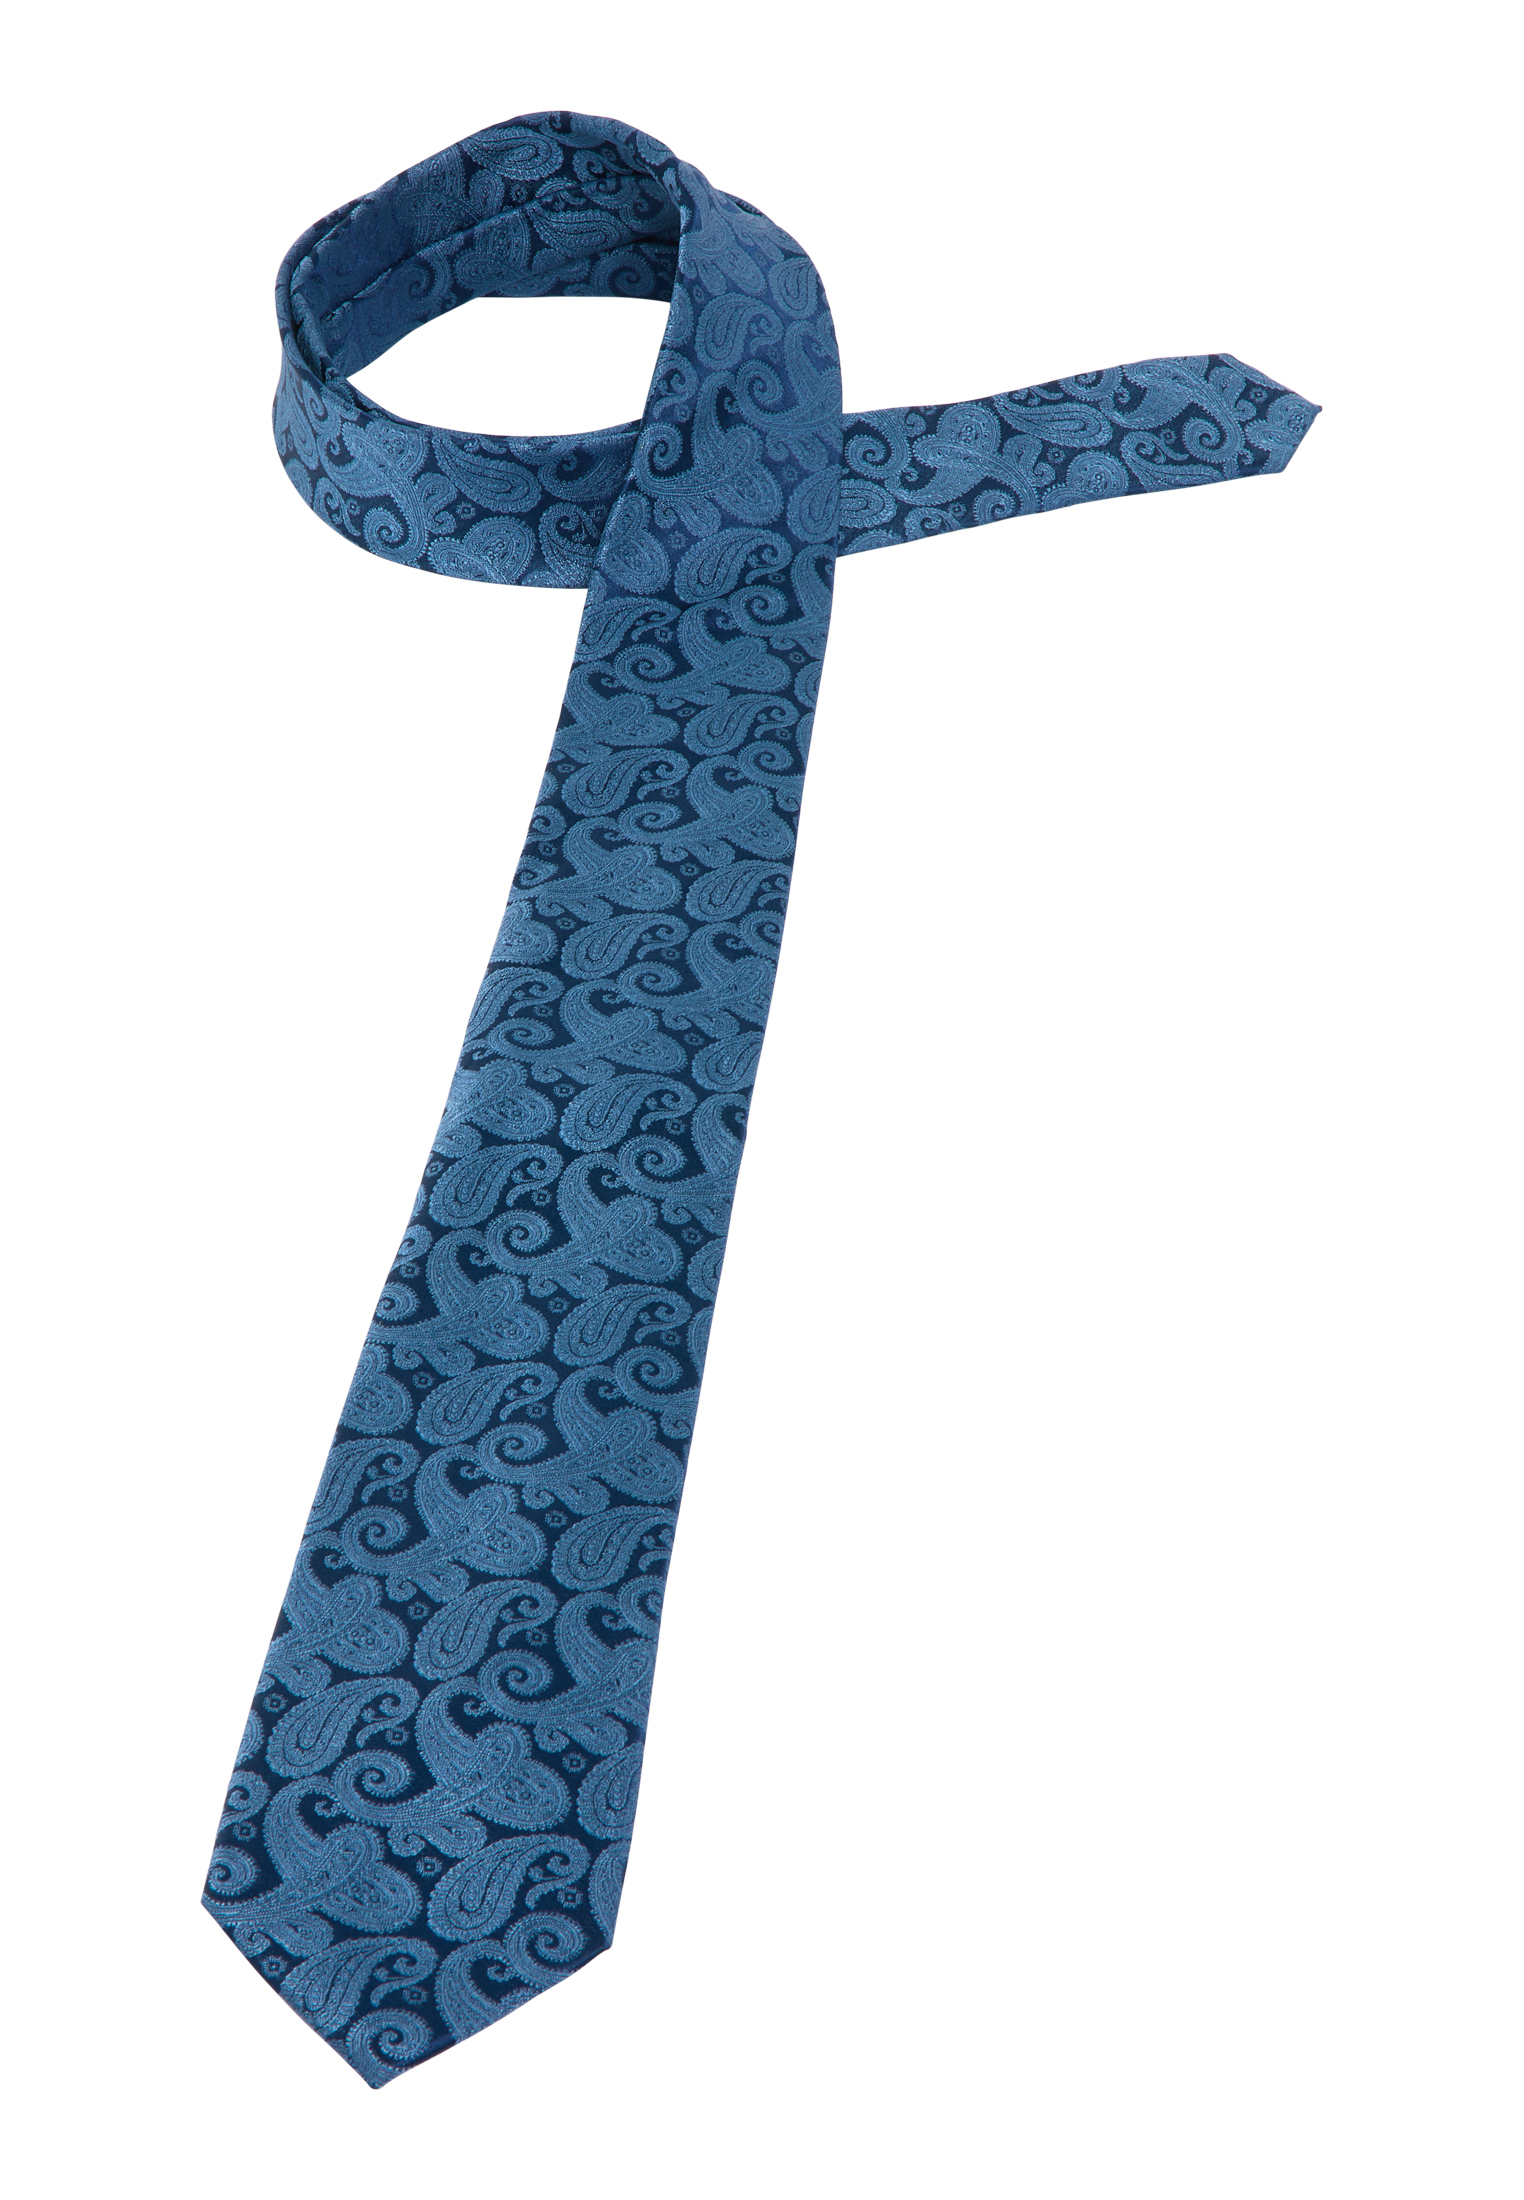 Krawatte in blau gemustert | blau | 142 | 1AC01891-01-41-142